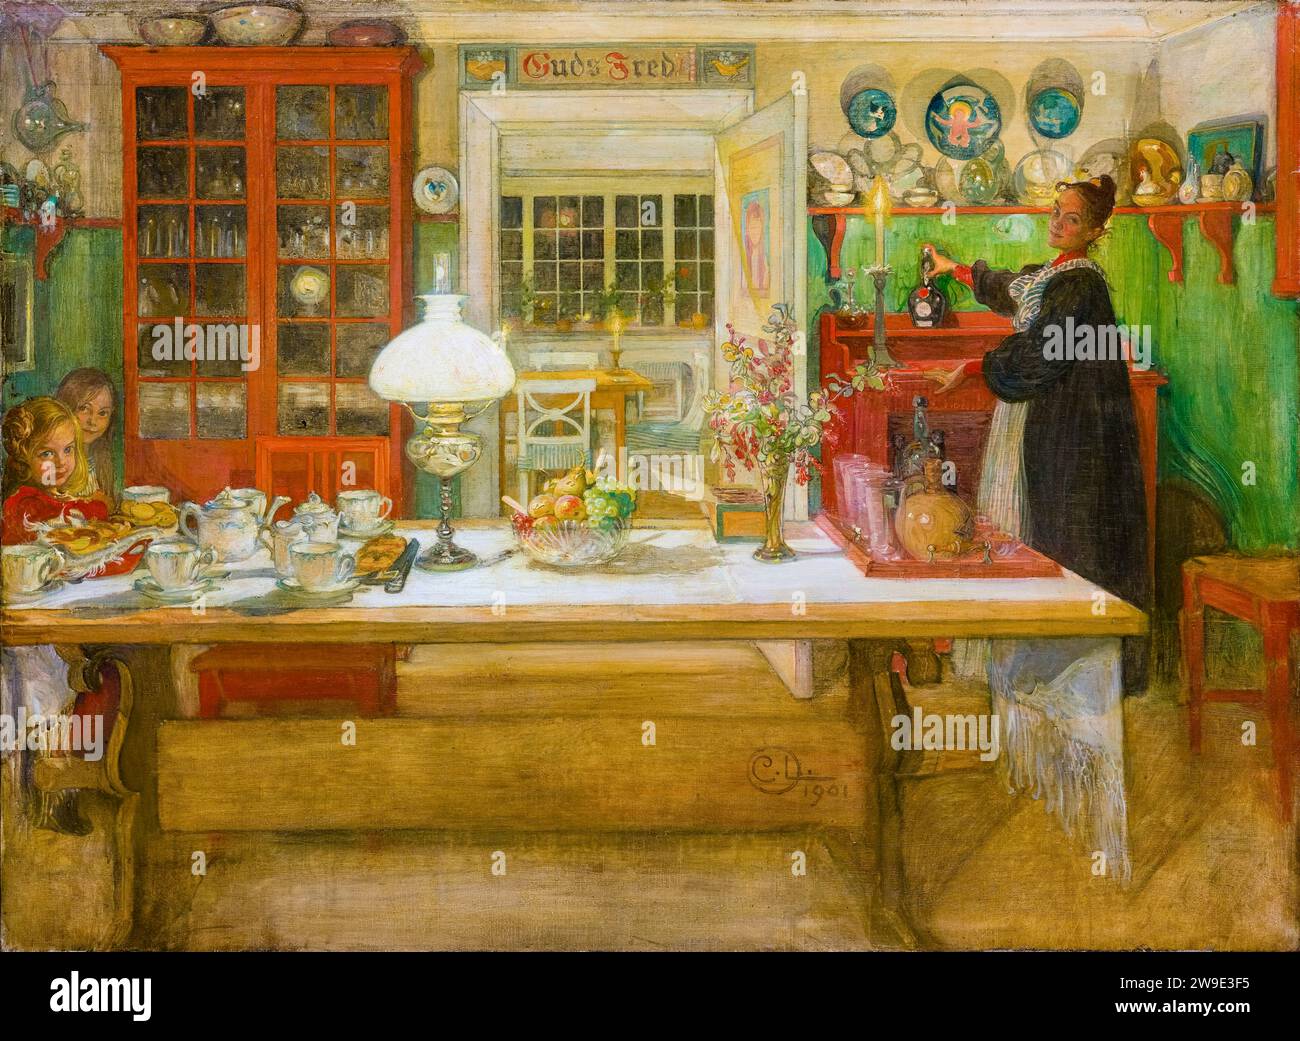 Carl Larsson, se préparer pour un jeu, peinture à l'huile sur toile, 1901 Banque D'Images